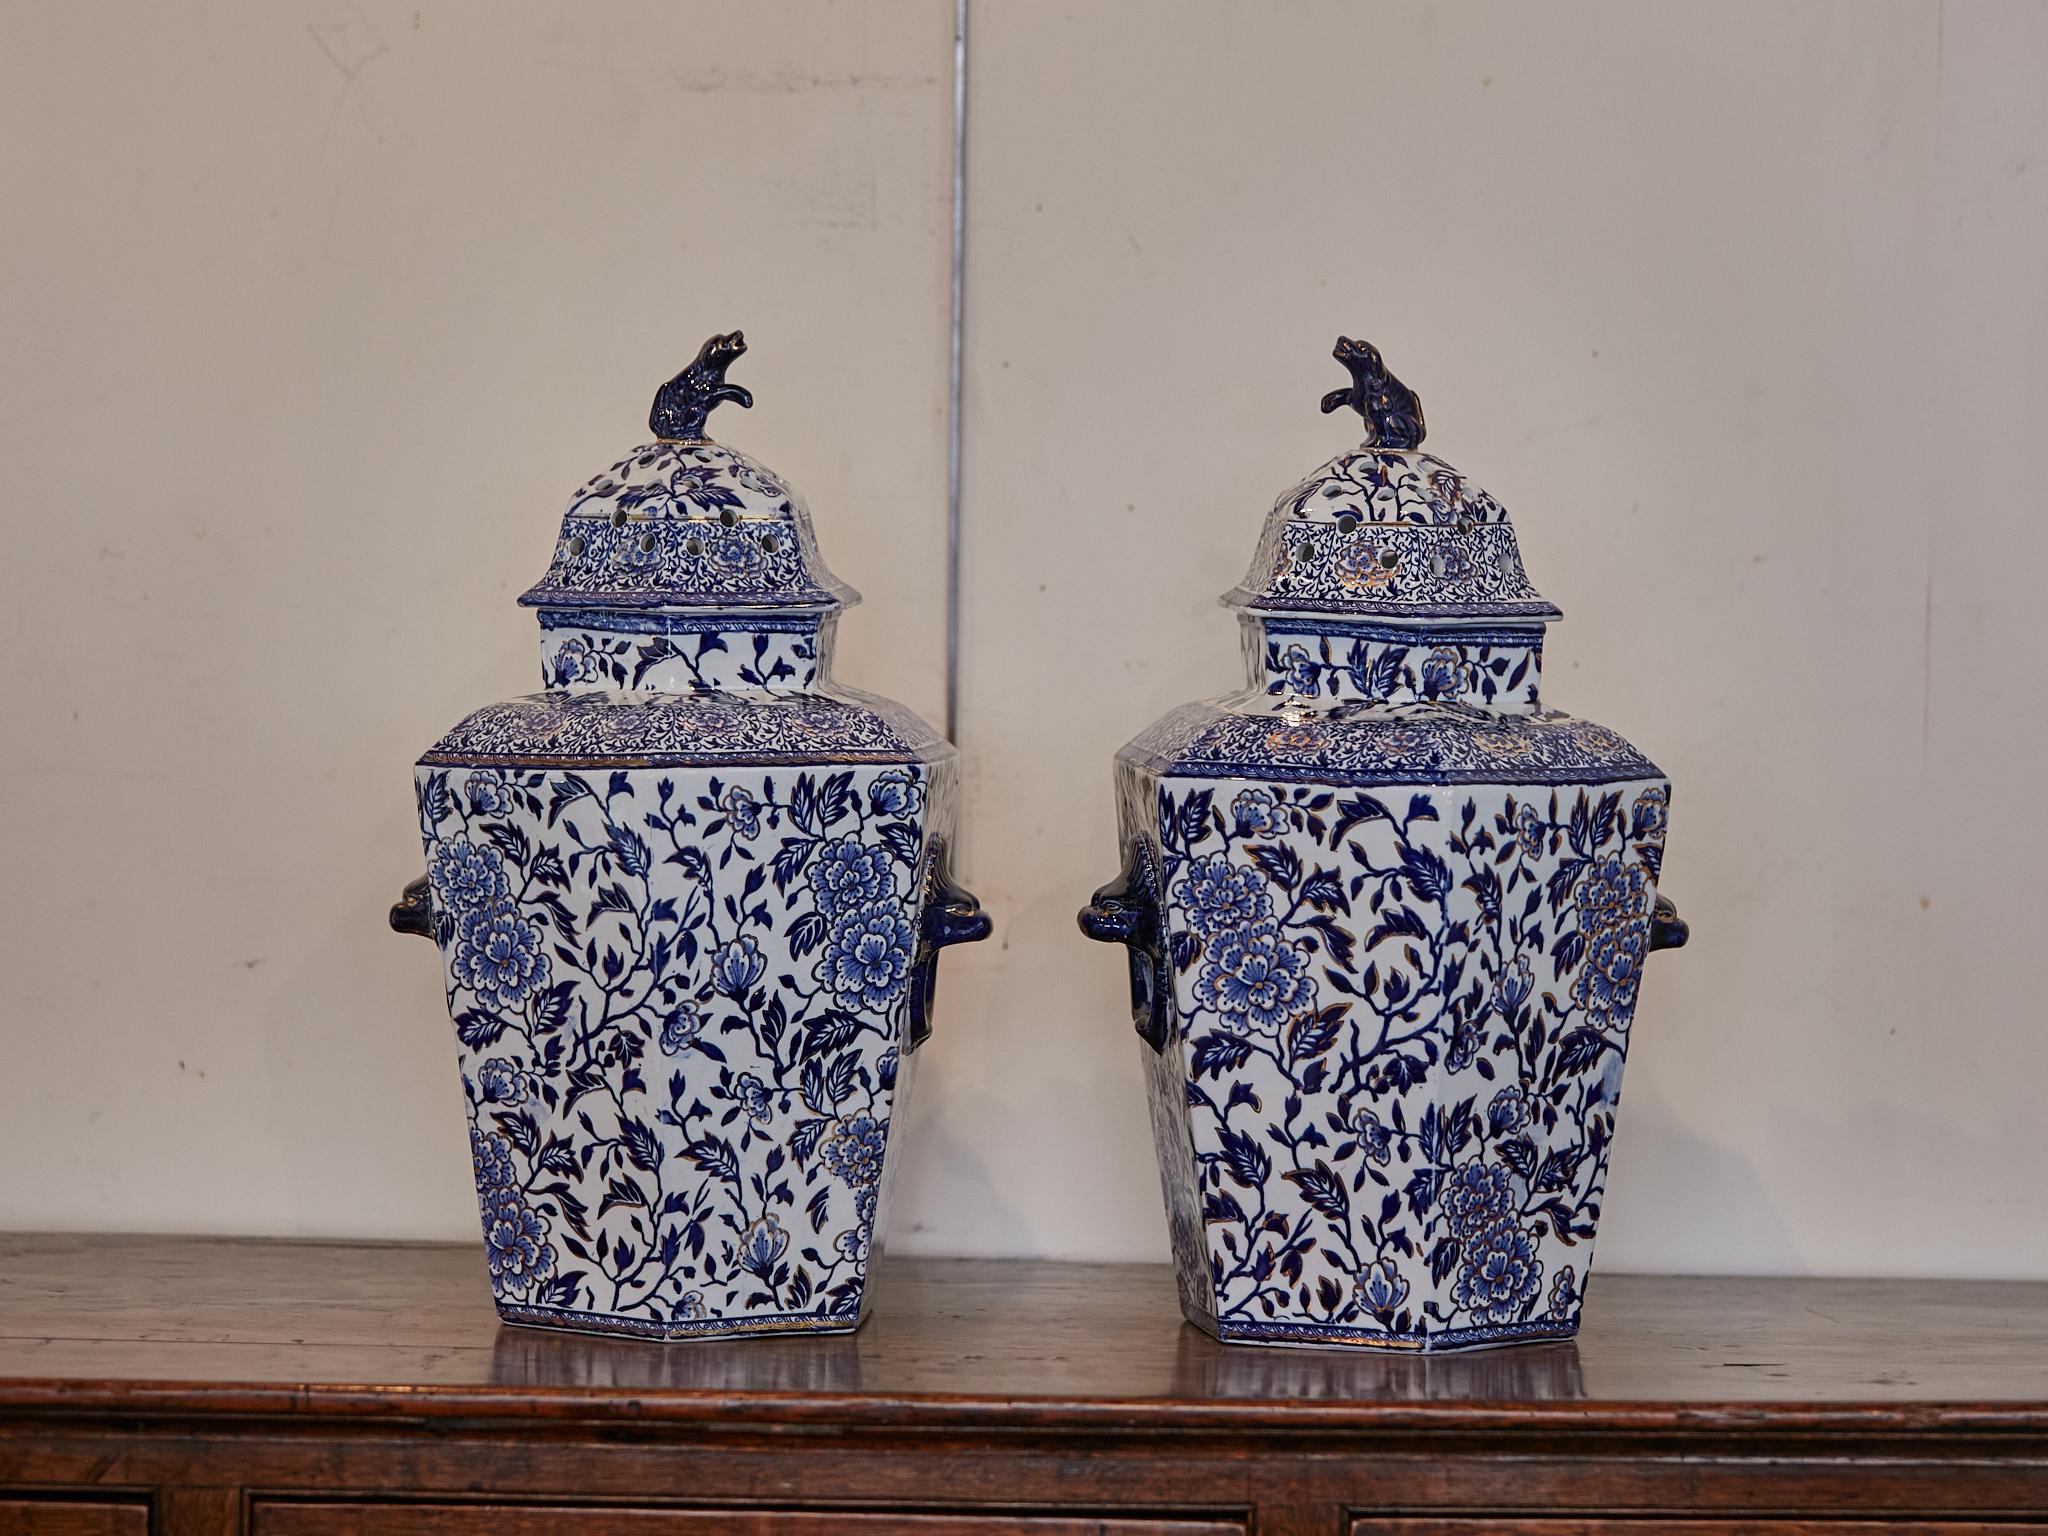 Paire de pots pourri hexagonaux à couvercle en porcelaine anglaise bleu et blanc du 19e siècle avec fleurons en forme de chien. L'élégance de la Chinoiserie se retrouve dans cette exquise paire de pots pourri hexagonaux en porcelaine anglaise bleue